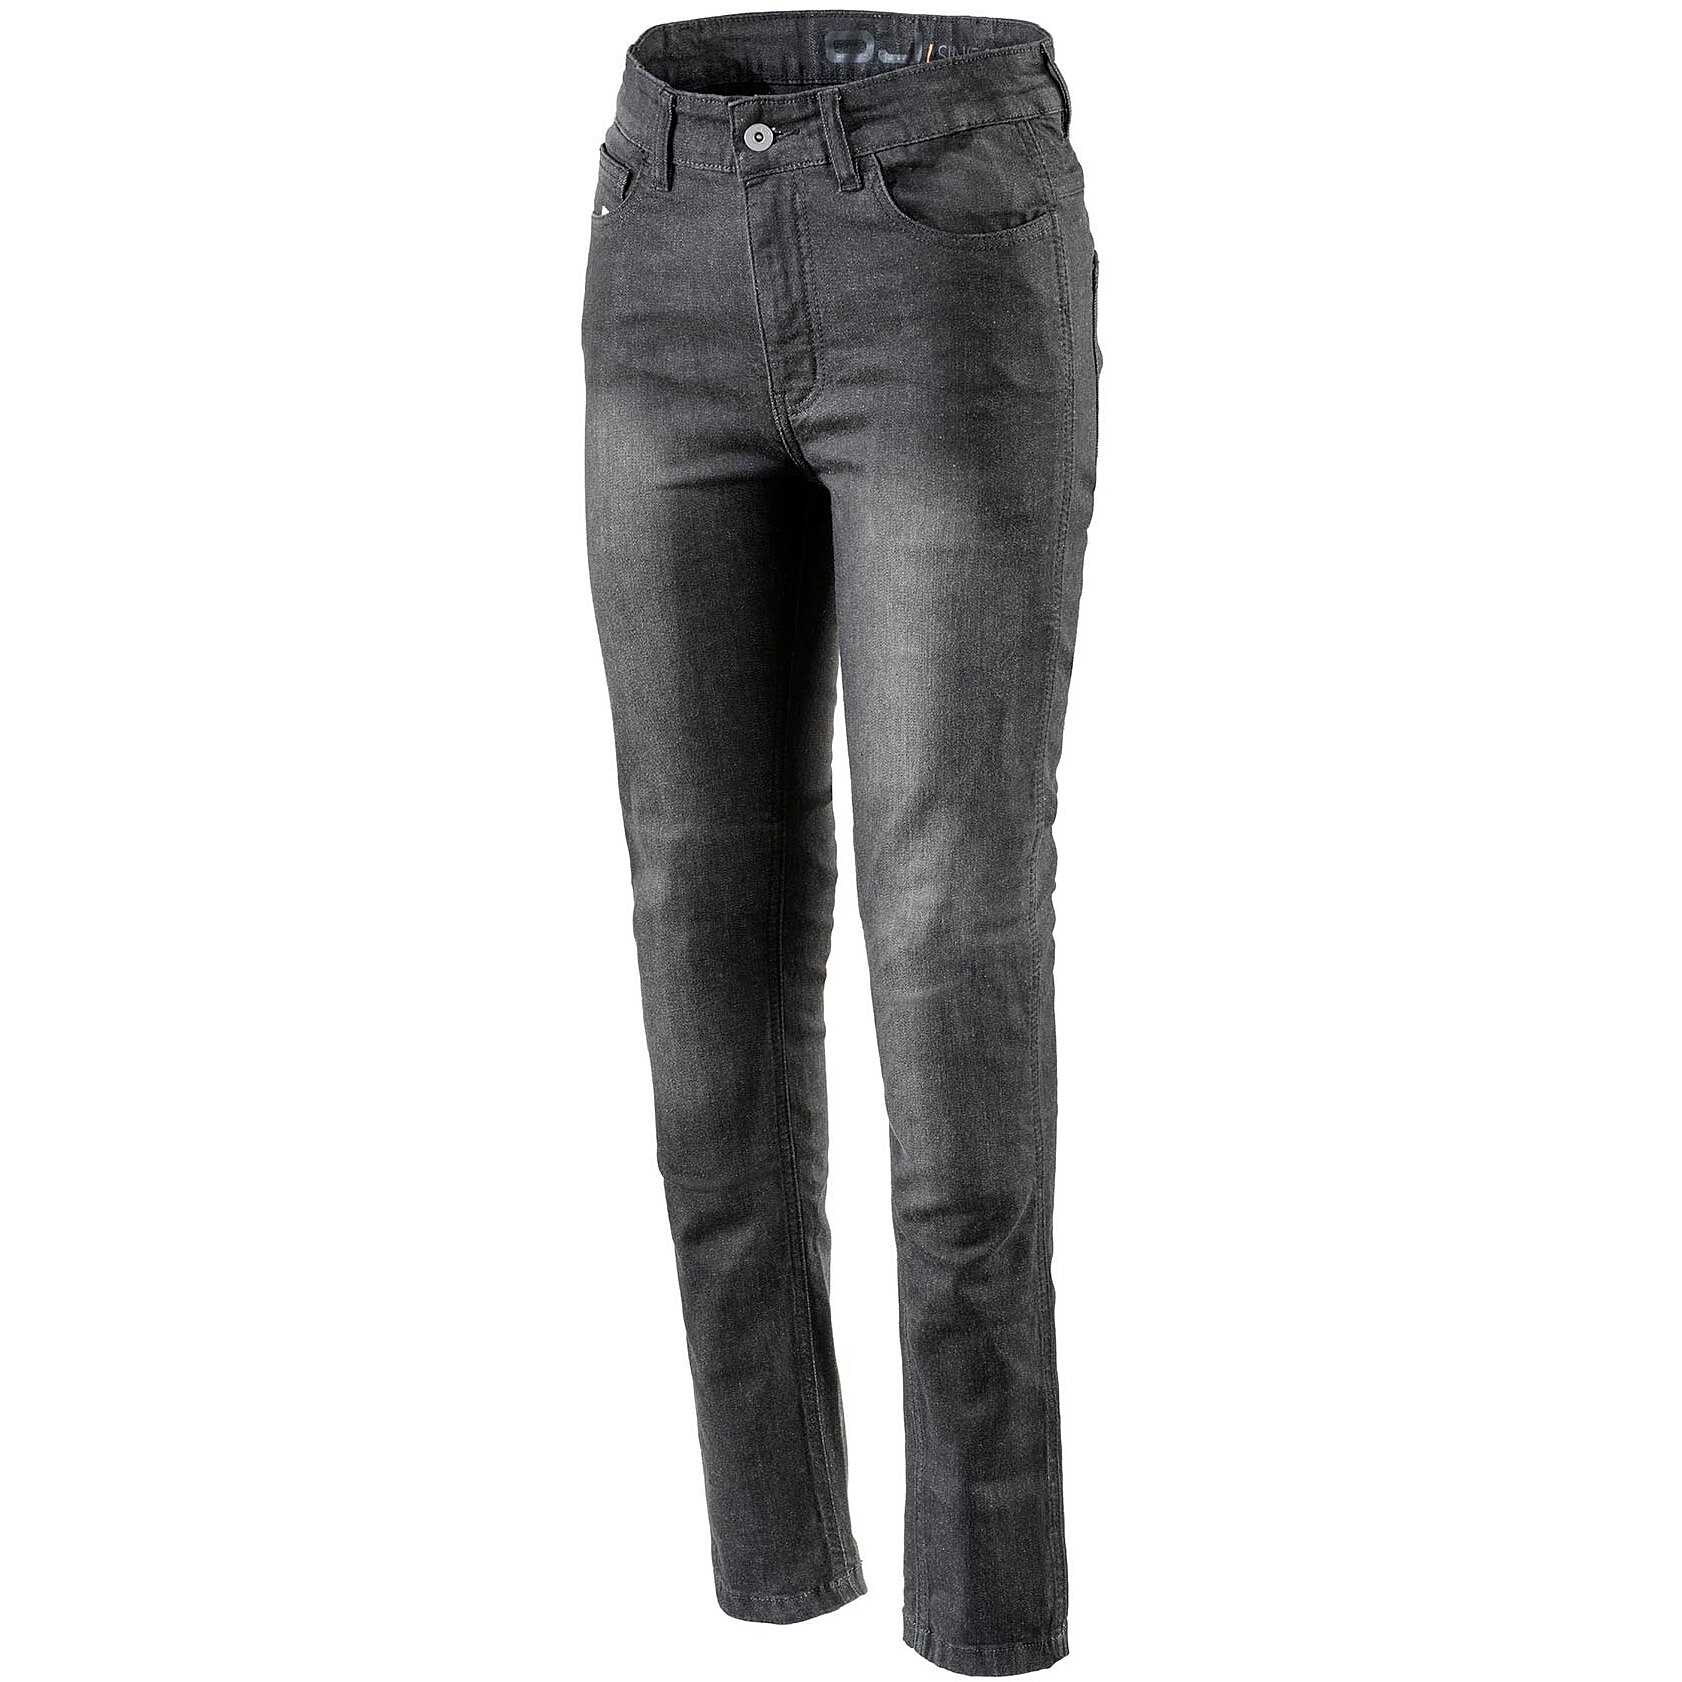 Pantalon Jeans Femme Moto Technique Oj Atmosphères J271 DARKEN LADY Noir  Homologué prEN 17092-4 Vente en Ligne 